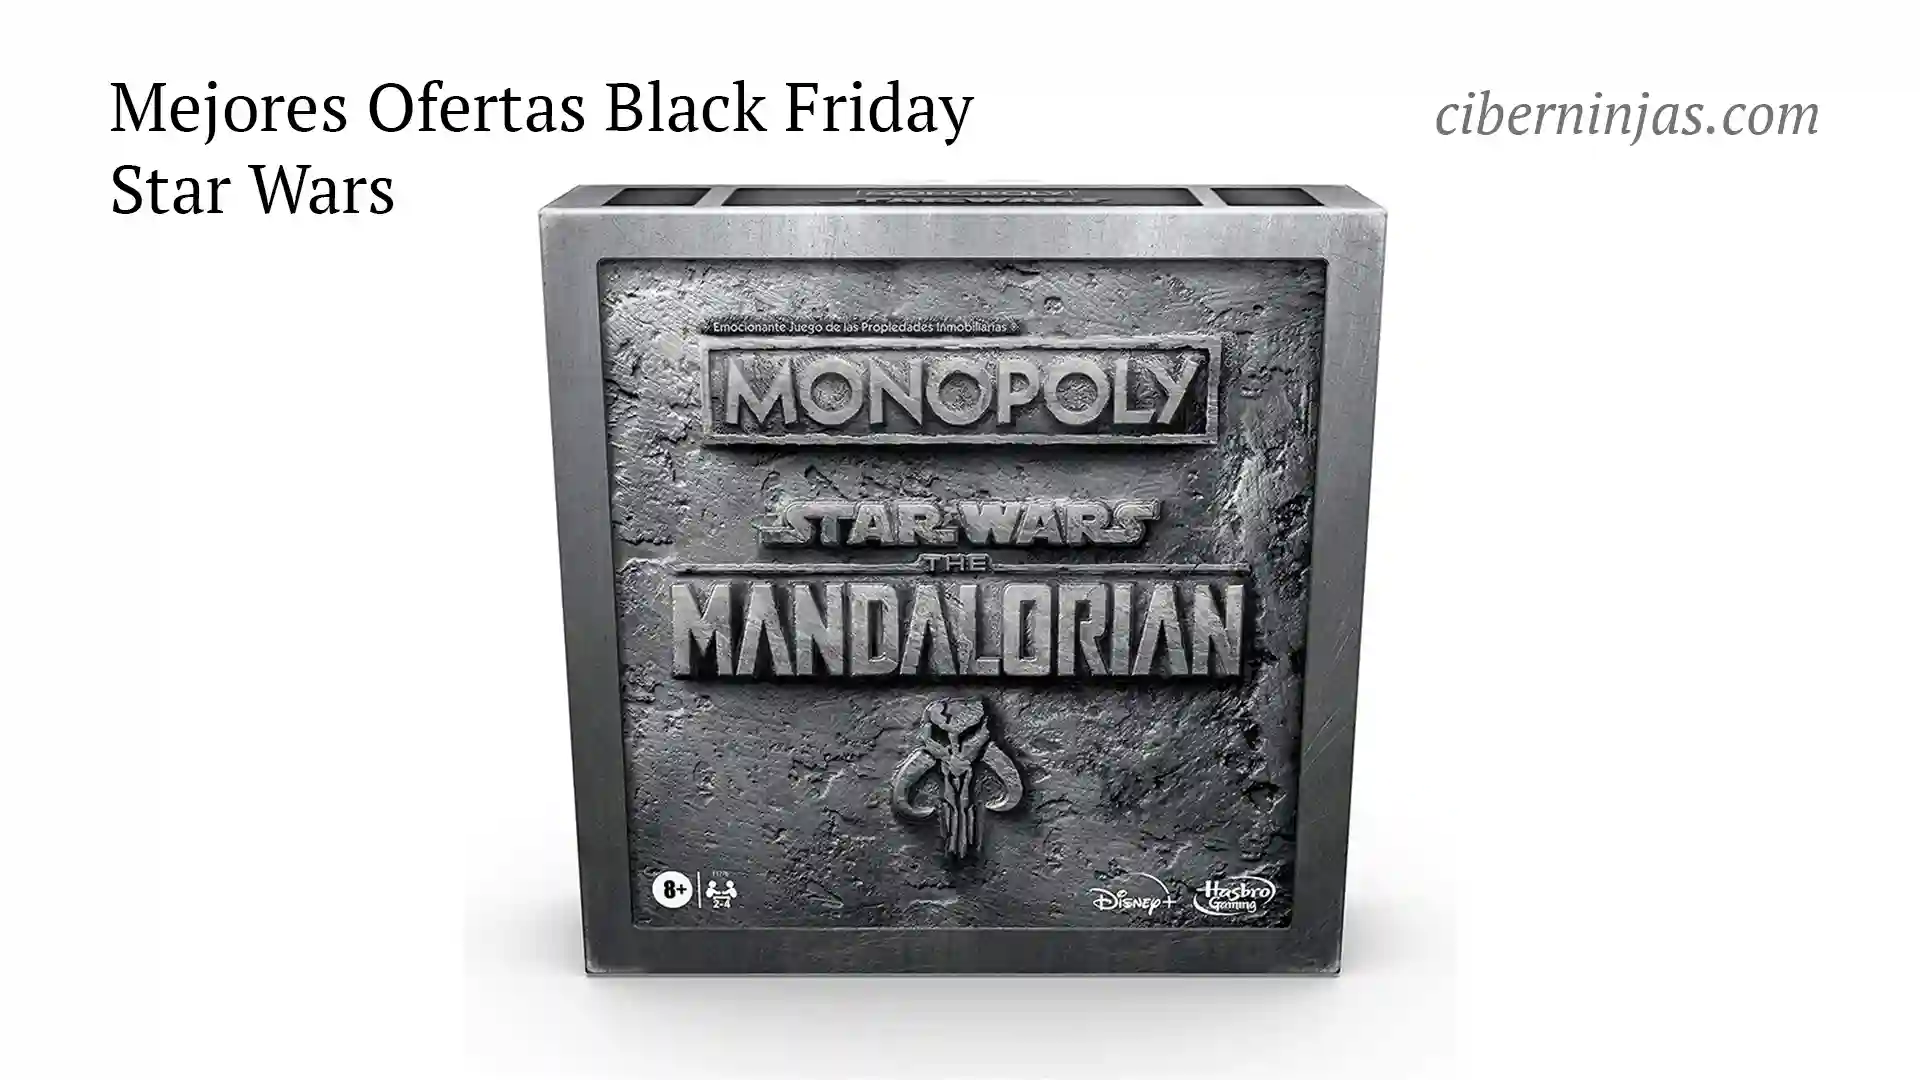 Star Wars en el Black Friday, regalos perfectos a precios mínimos históricos